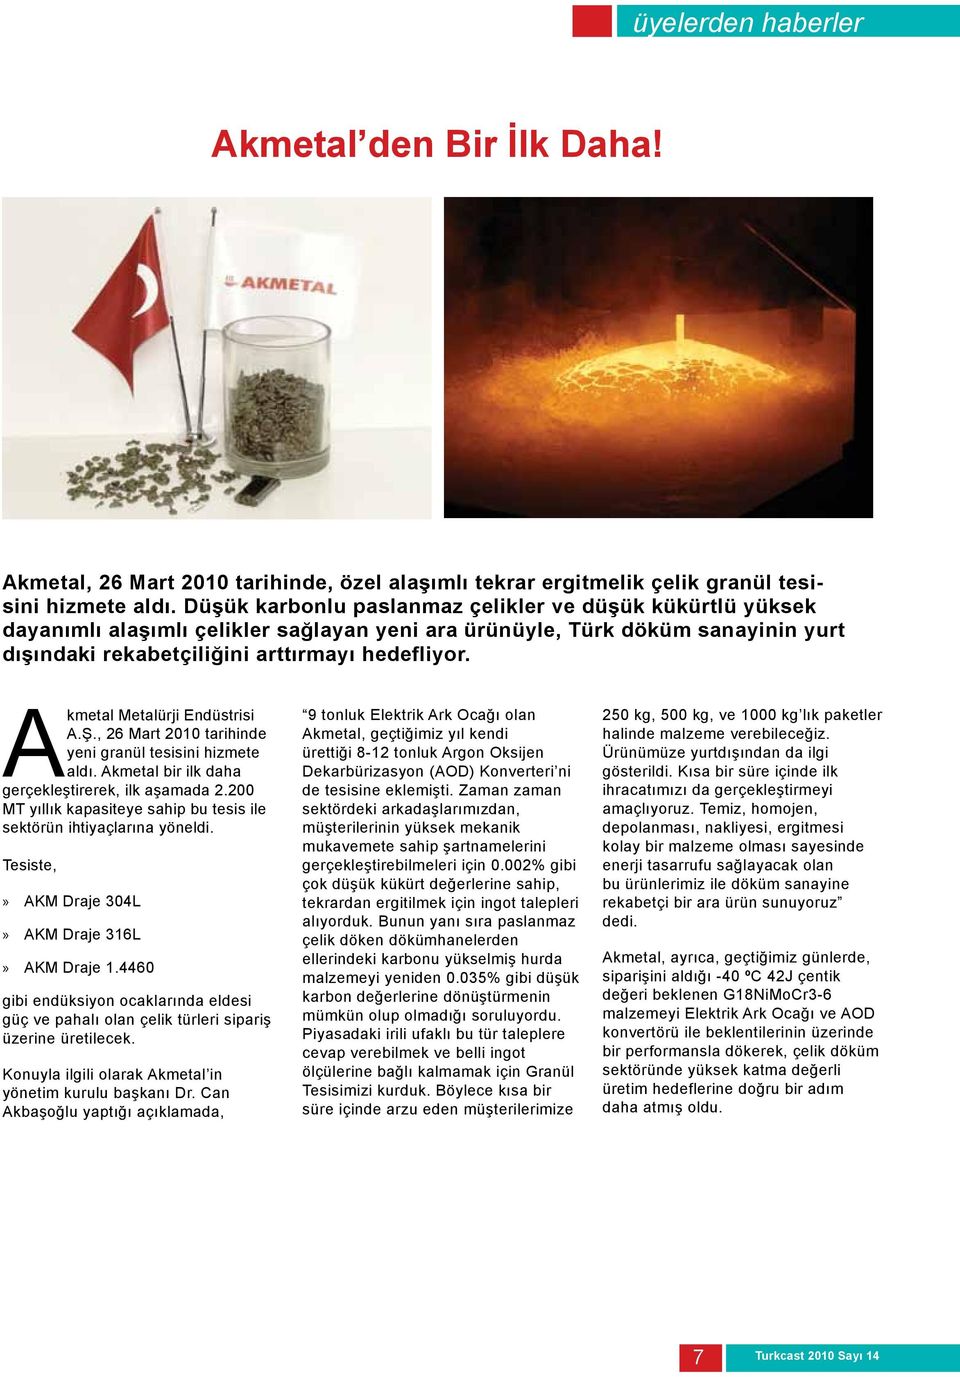 Akmetal Metalürji Endüstrisi A.Ş., 26 Mart 2010 tarihinde yeni granül tesisini hizmete aldı. Akmetal bir ilk daha gerçekleştirerek, ilk aşamada 2.